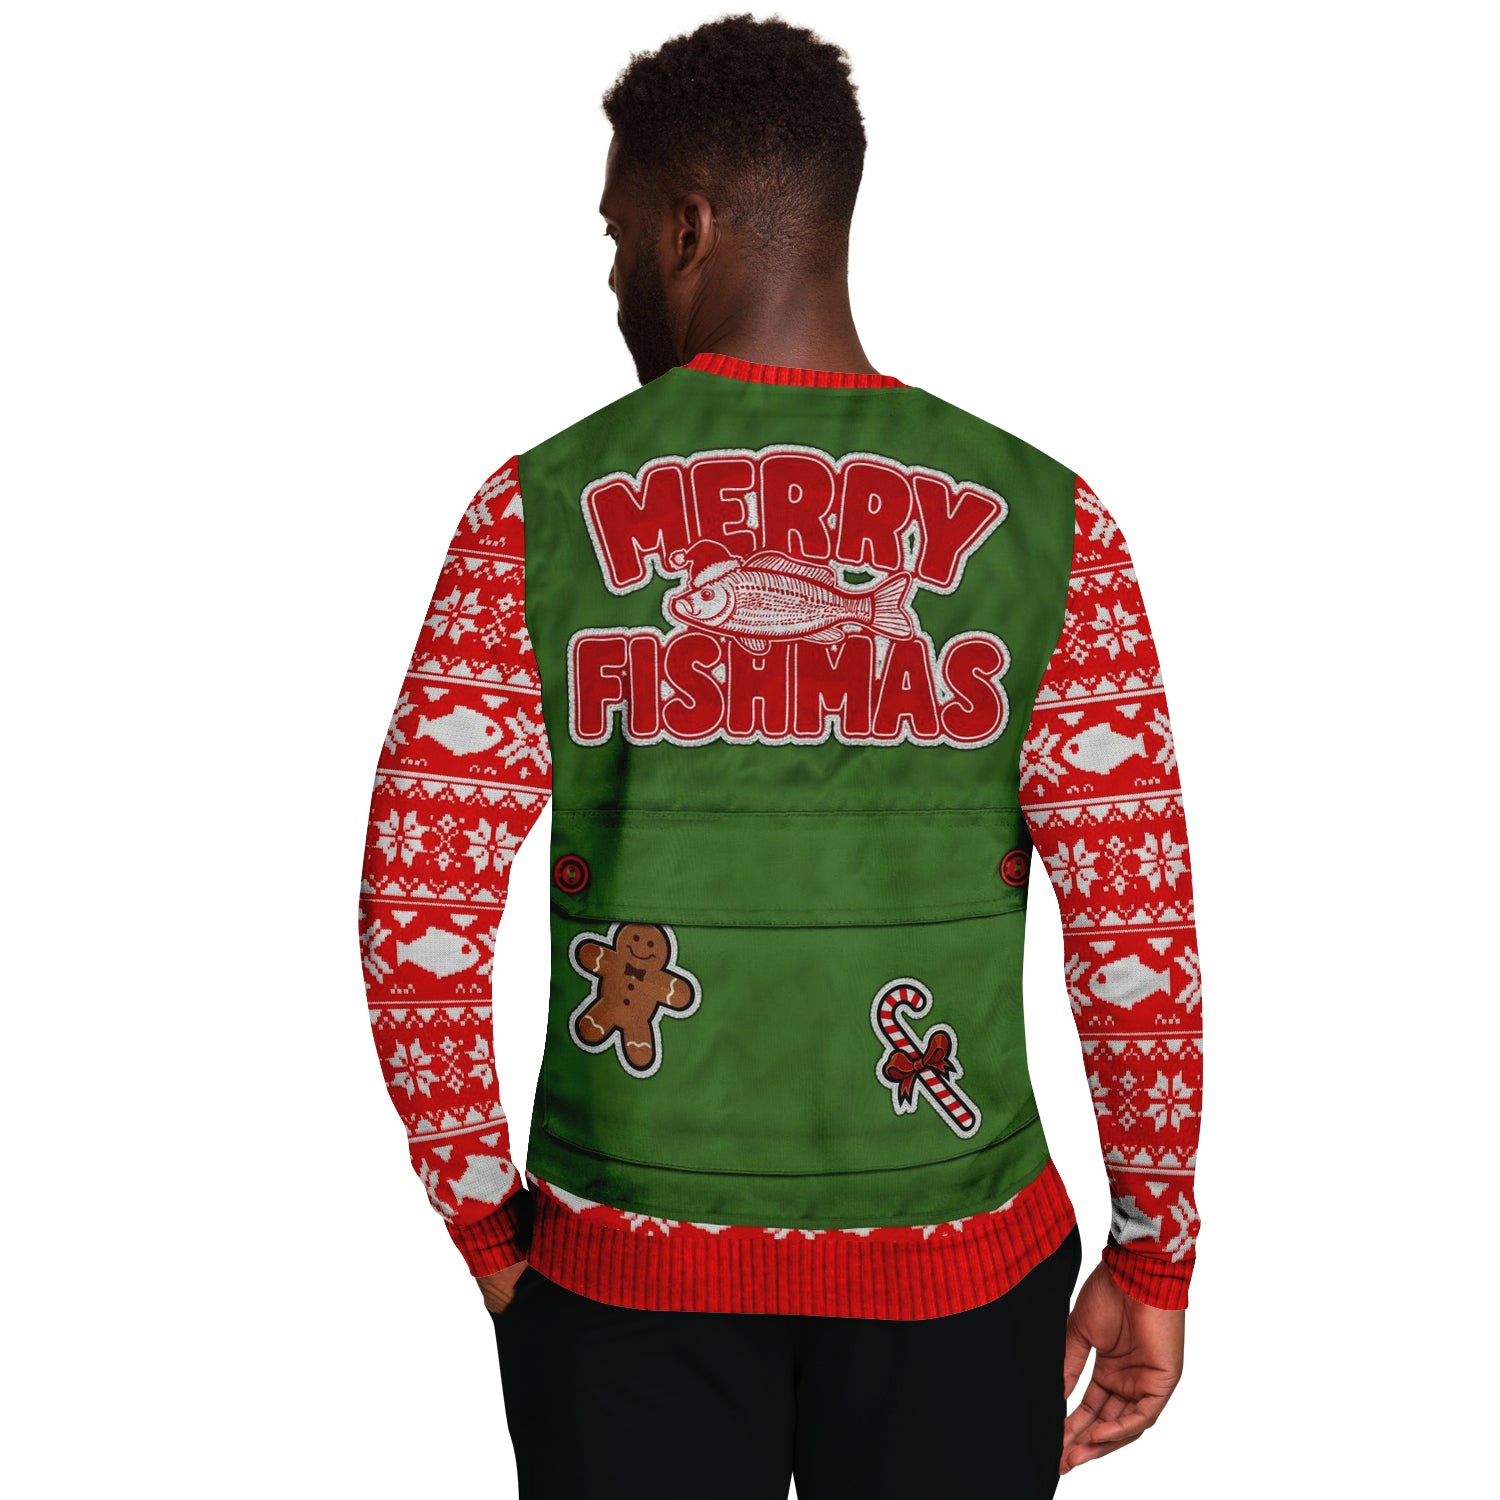 Merry Fishmas Vest Sweatshirt | Unisex Ugly Christmas Sweater, Xmas Sweater, Holiday Sweater, Festive Sweater, Funny Sweater, Funny Party Shirt